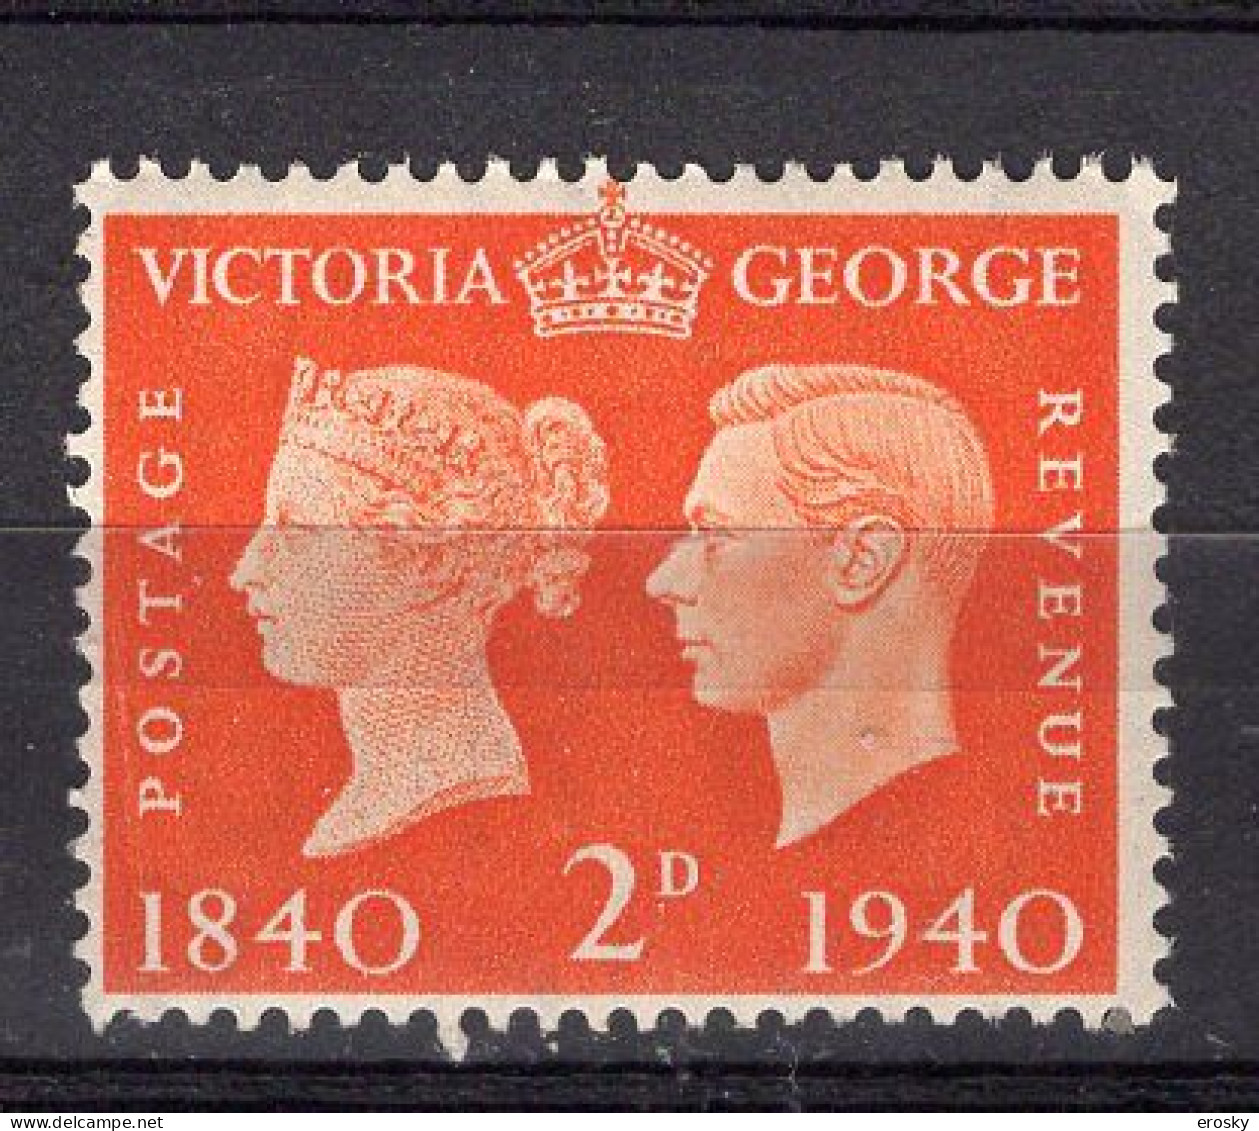 P1959 - GRANDE BRETAGNE Yv N°230 ** - Unused Stamps